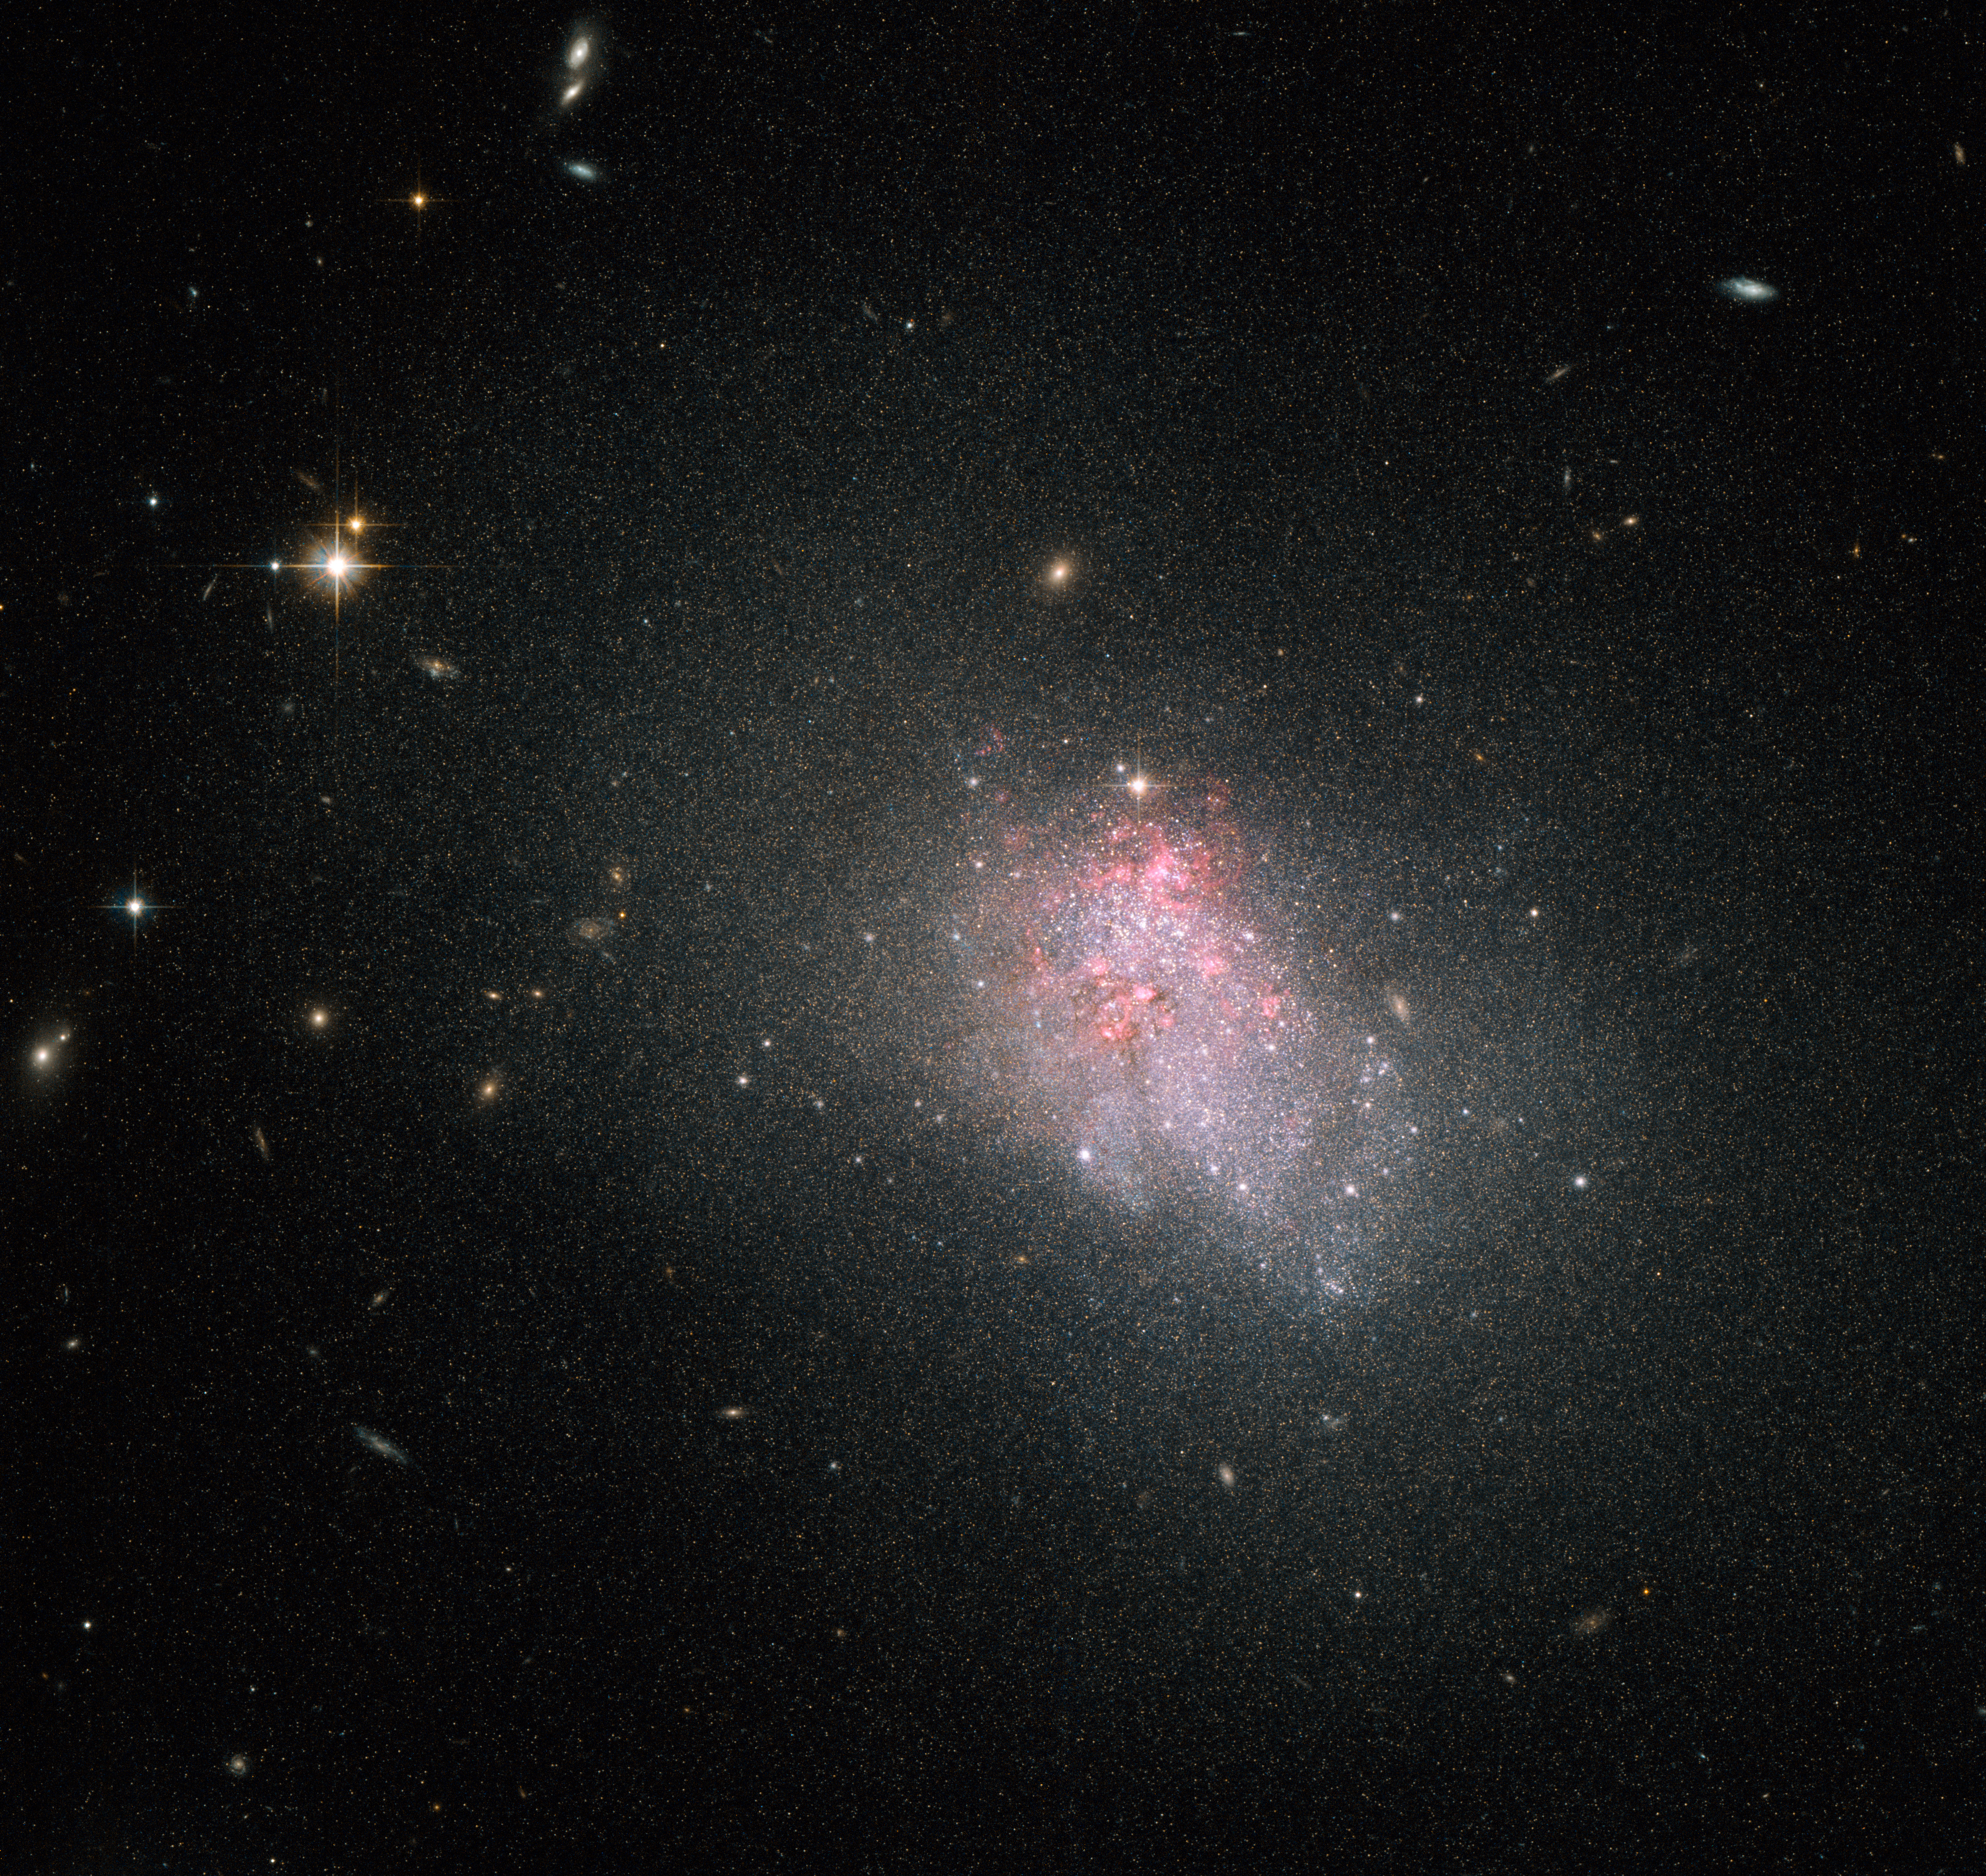 Violent star formation episodes in dwarf galaxies